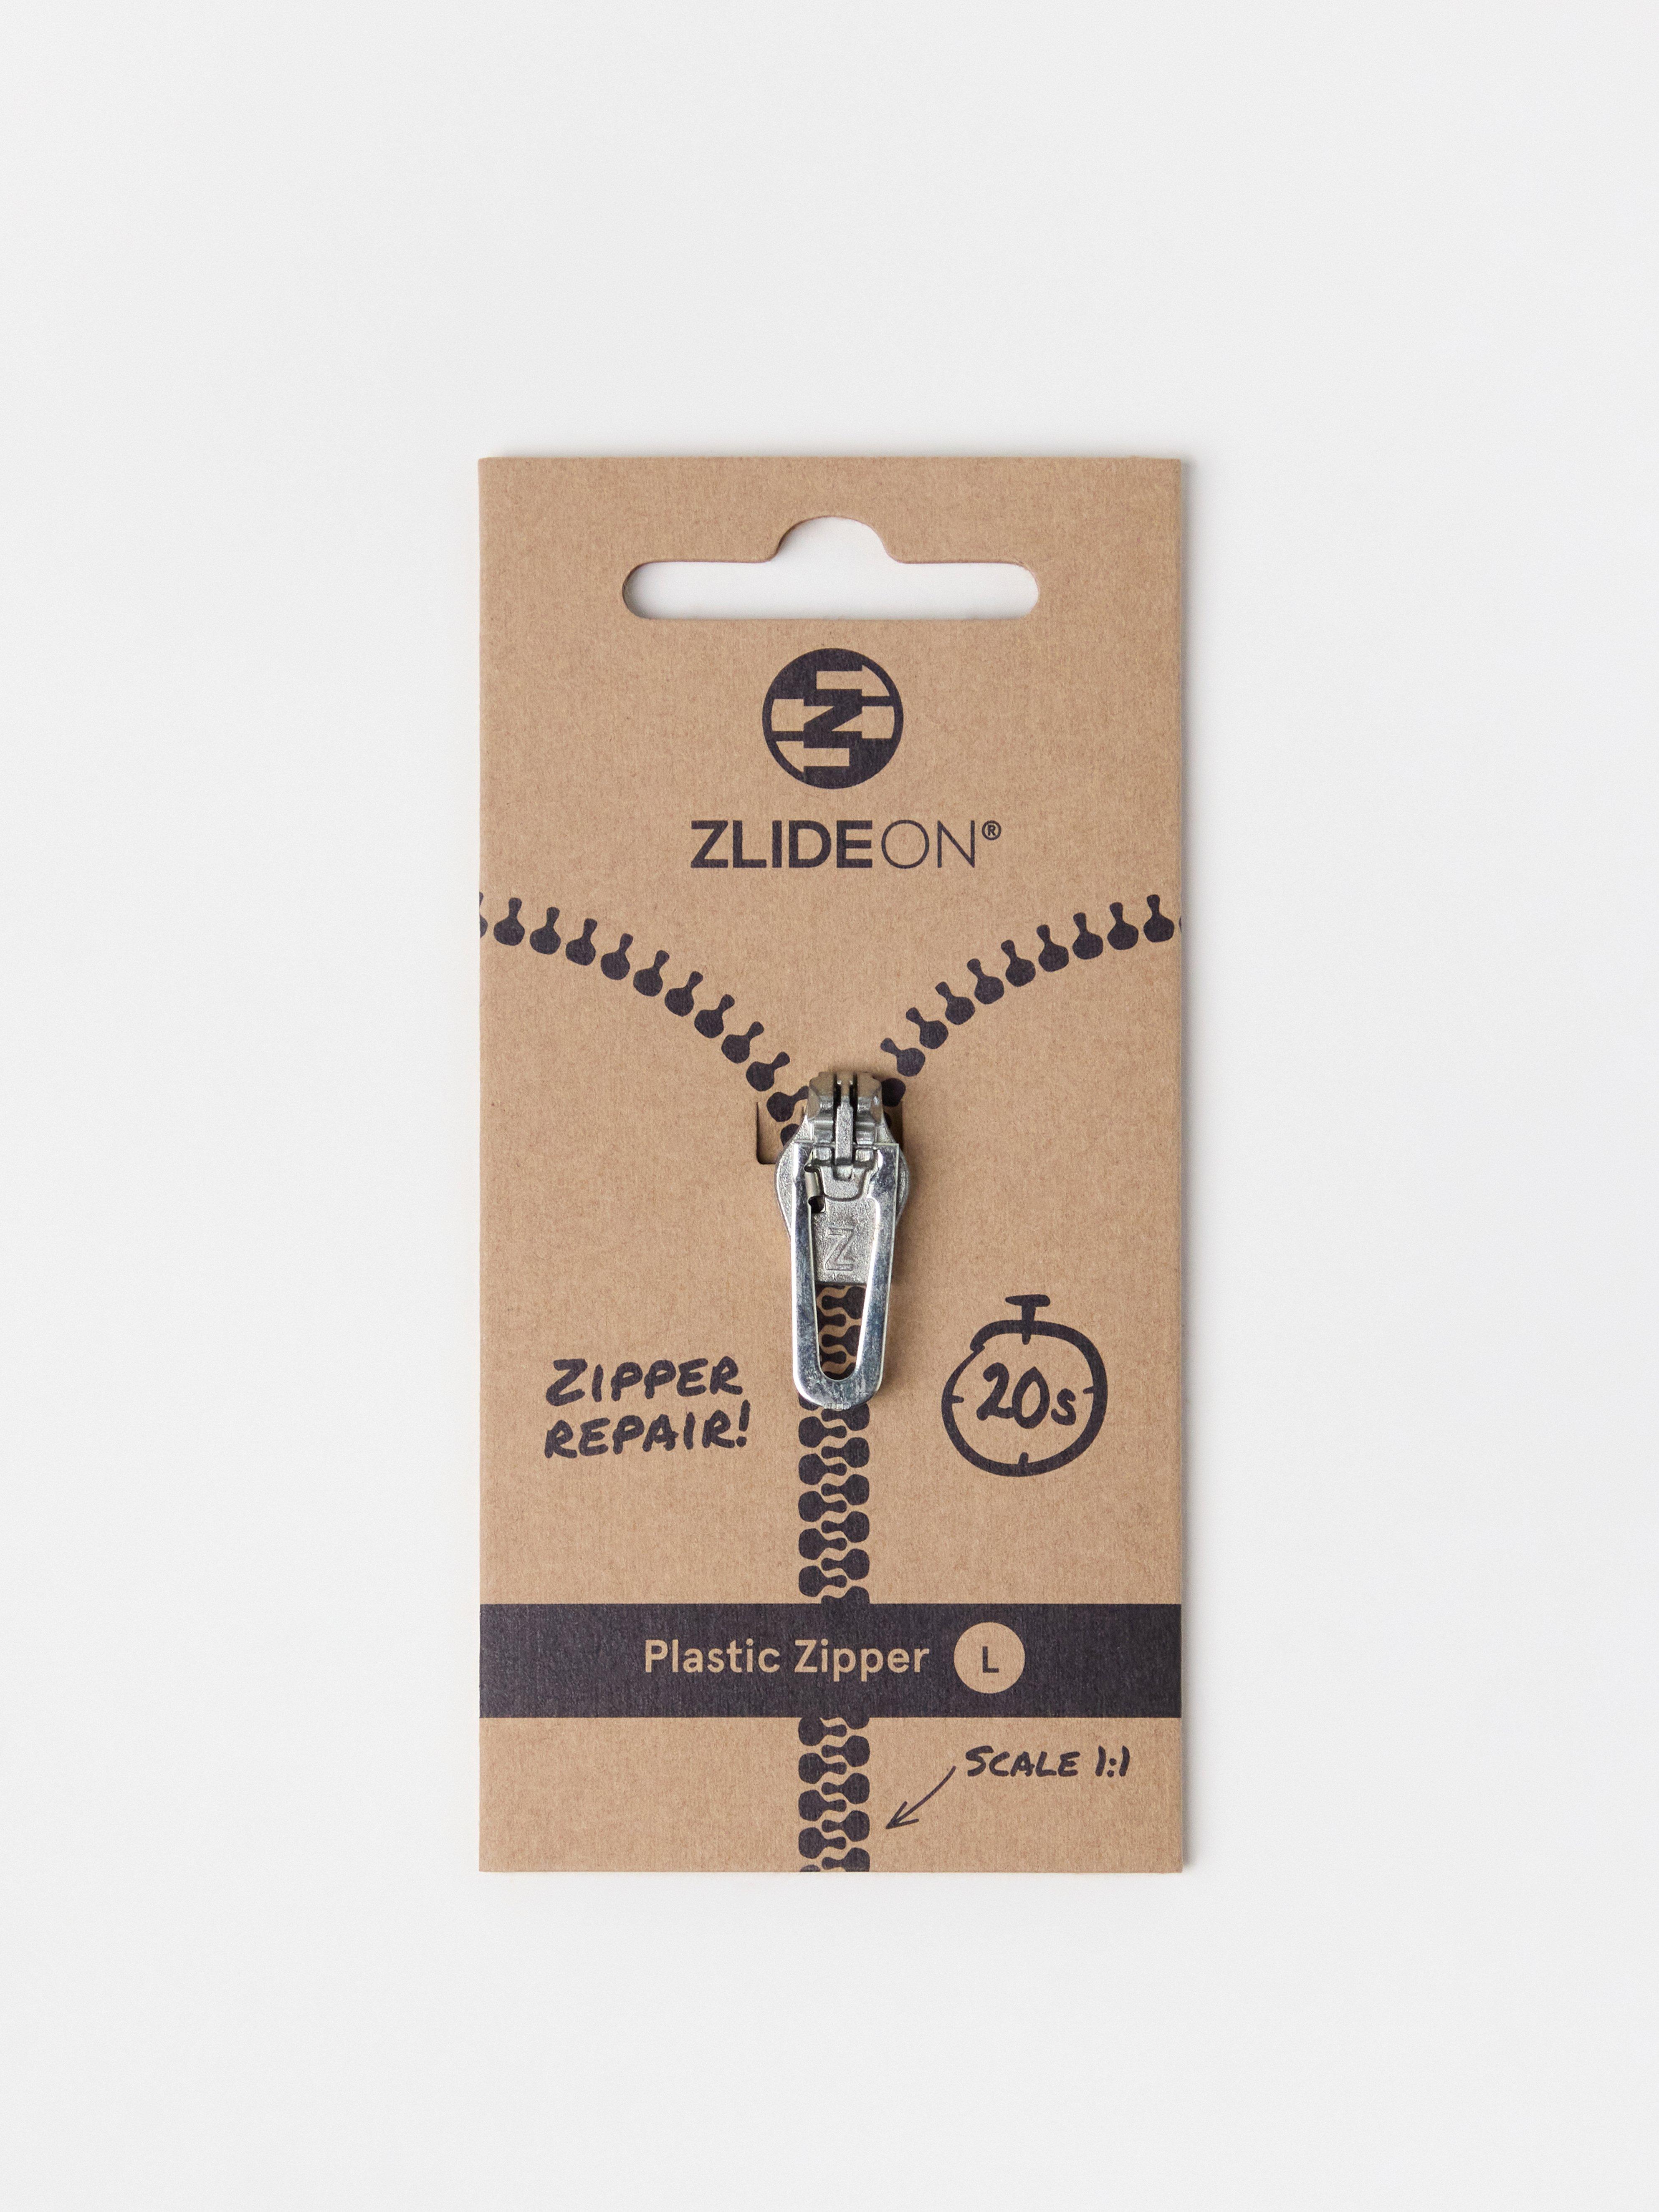 ZlideOn zip fixer - Fix broken zips